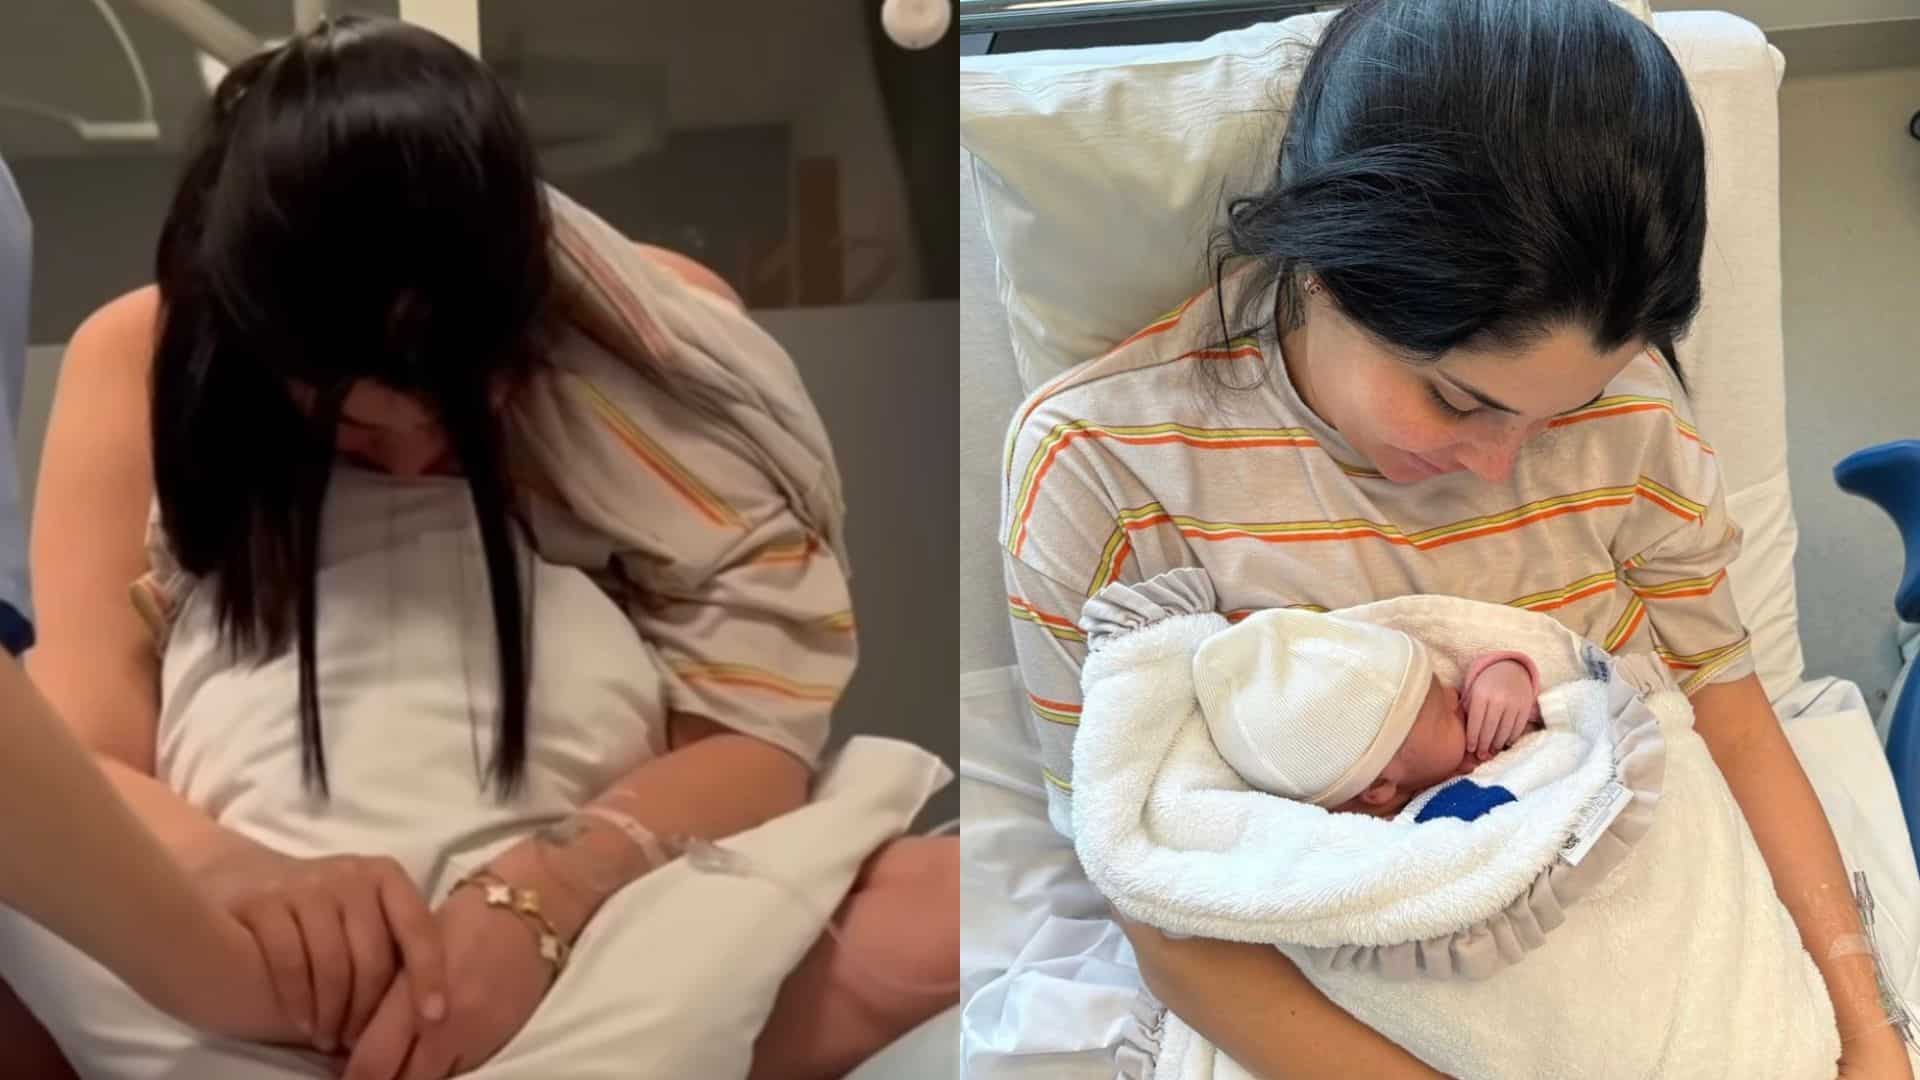 Coralie Porrovecchio : maman d'une petite Sleylee, elle montre une vidéo de son accouchement